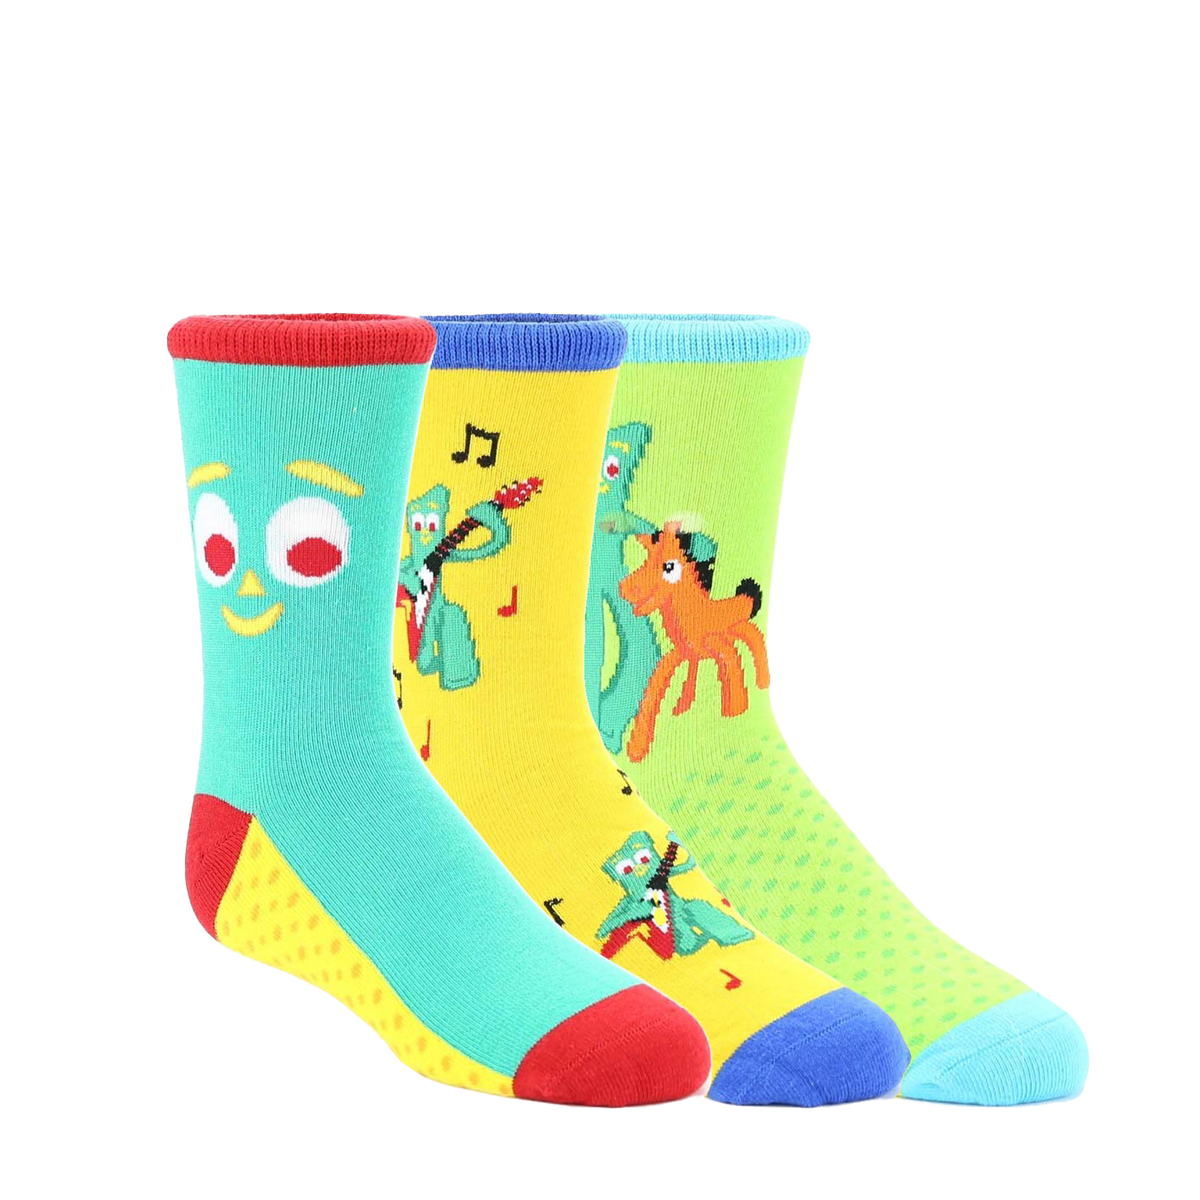 Gumby Socks - Kids - 7-10 Years - 3 pair